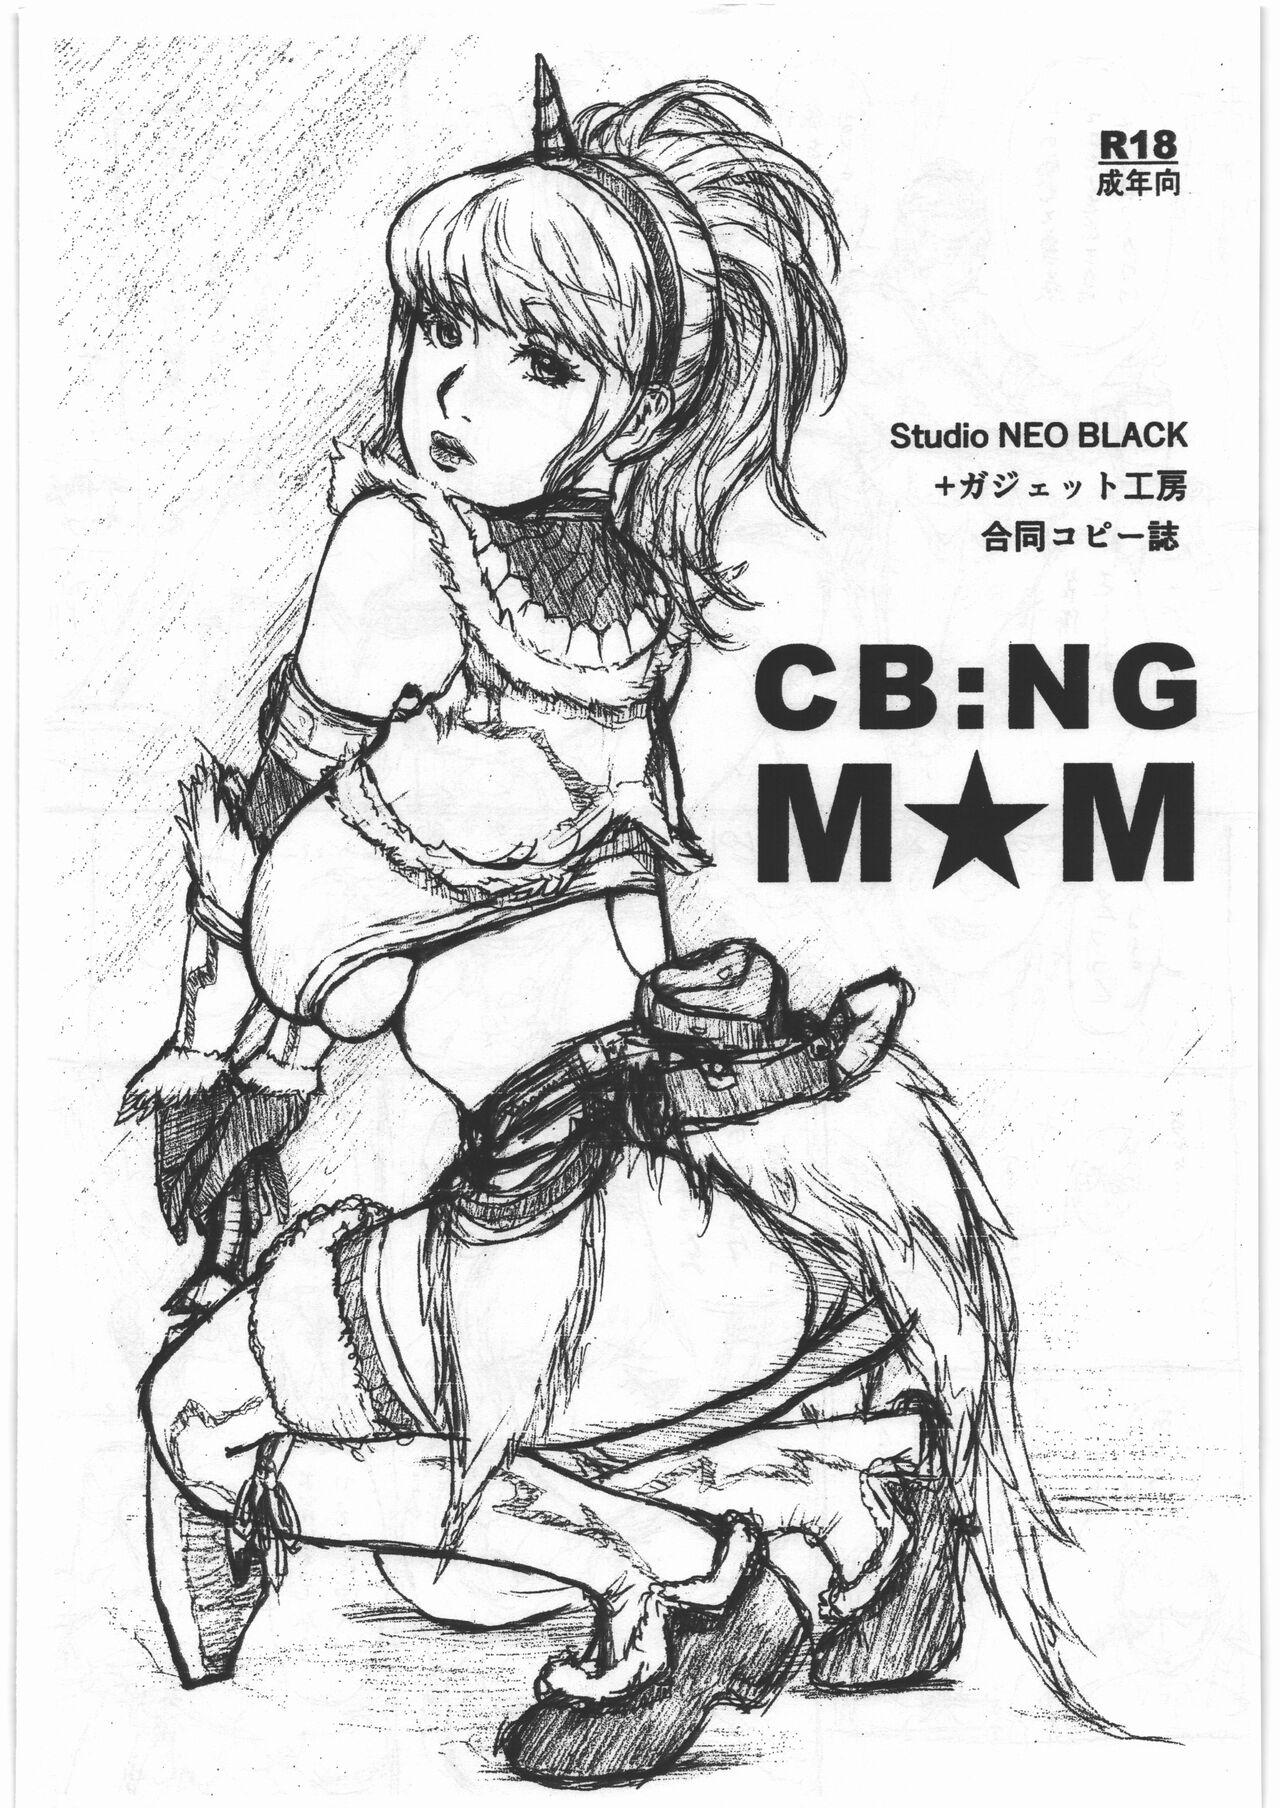 CB:NG M★M (C97) [Studio NEO BLACK、ガジェット工房 (Neo Black、A-10)] (モンスターハンター、魔法少女まどか☆マギカ) 0